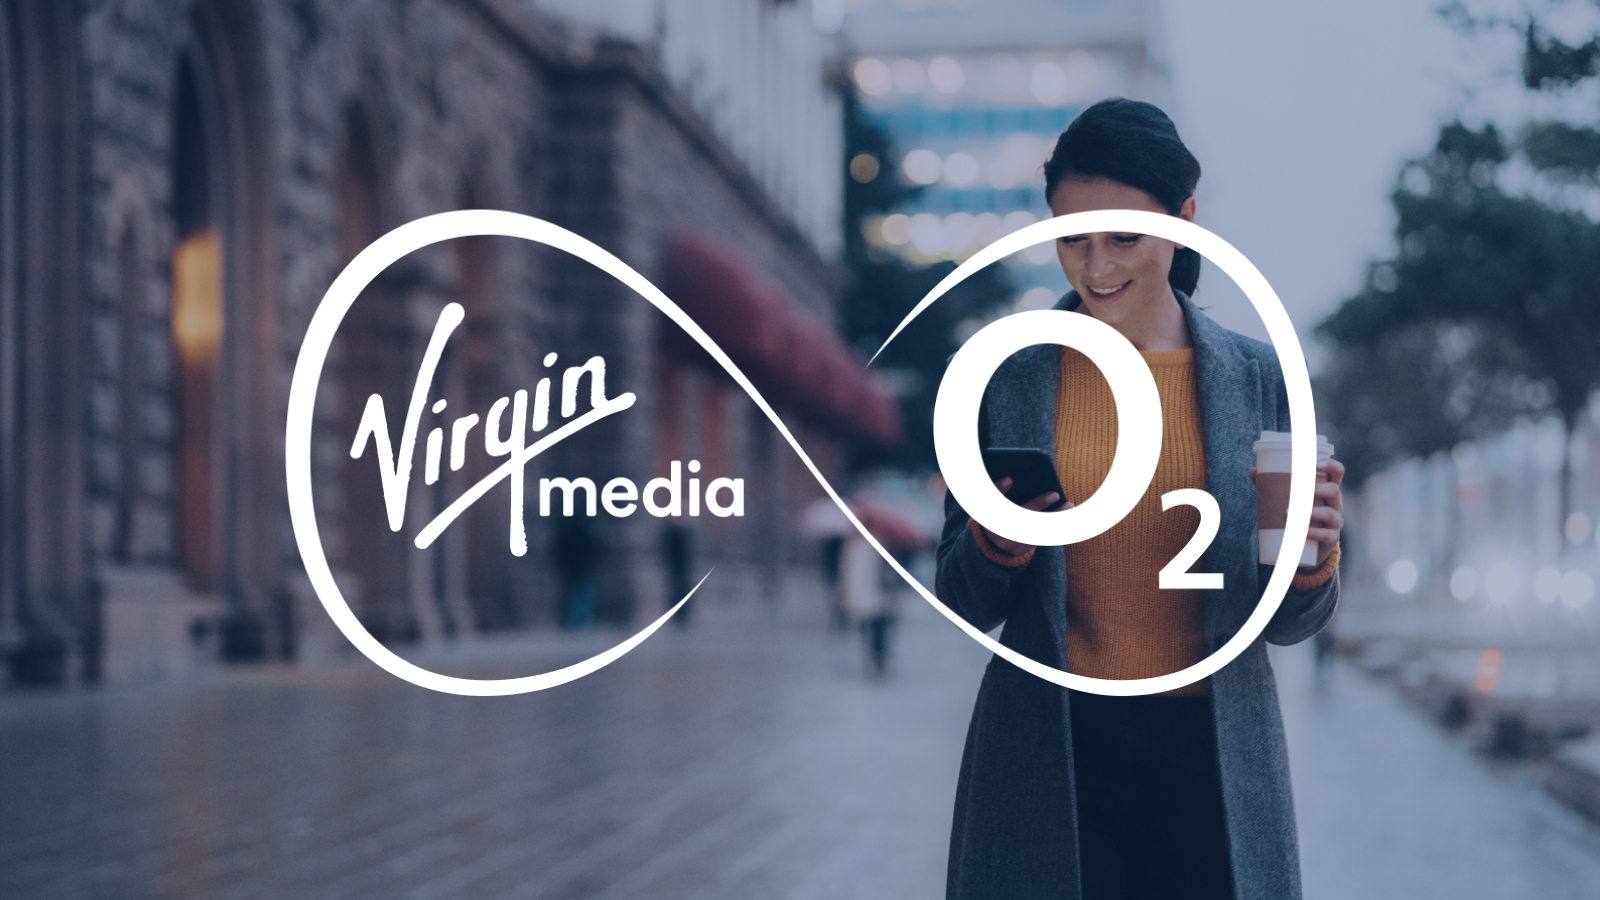 Graphic: Virgin Media 02 Logo